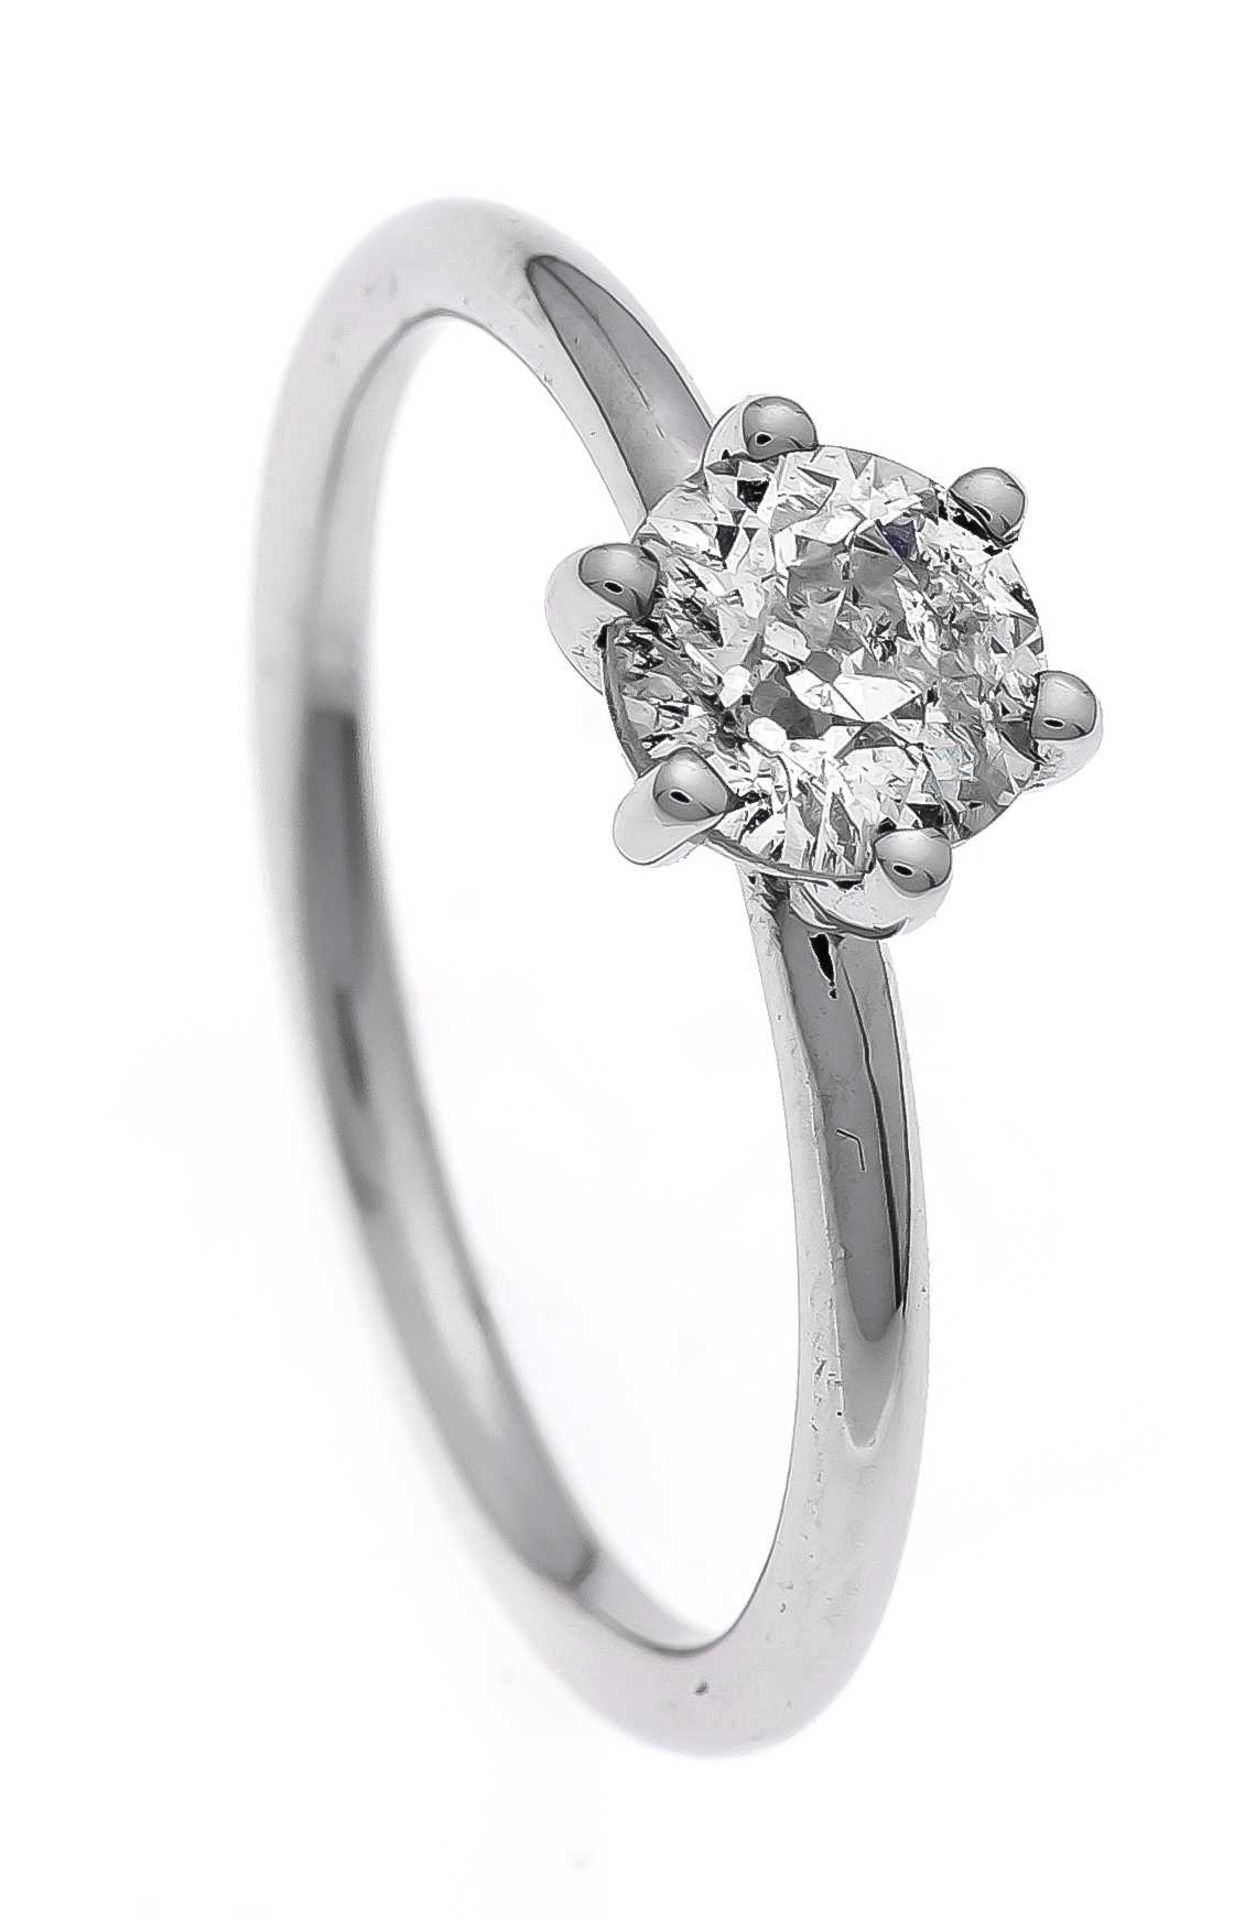 Altschliff-Diamant-Ring WG 750/000 mit einem Altschliff-Diamanten 0,80 ct Weiß(H)/PI, RG 56, 2,9 g